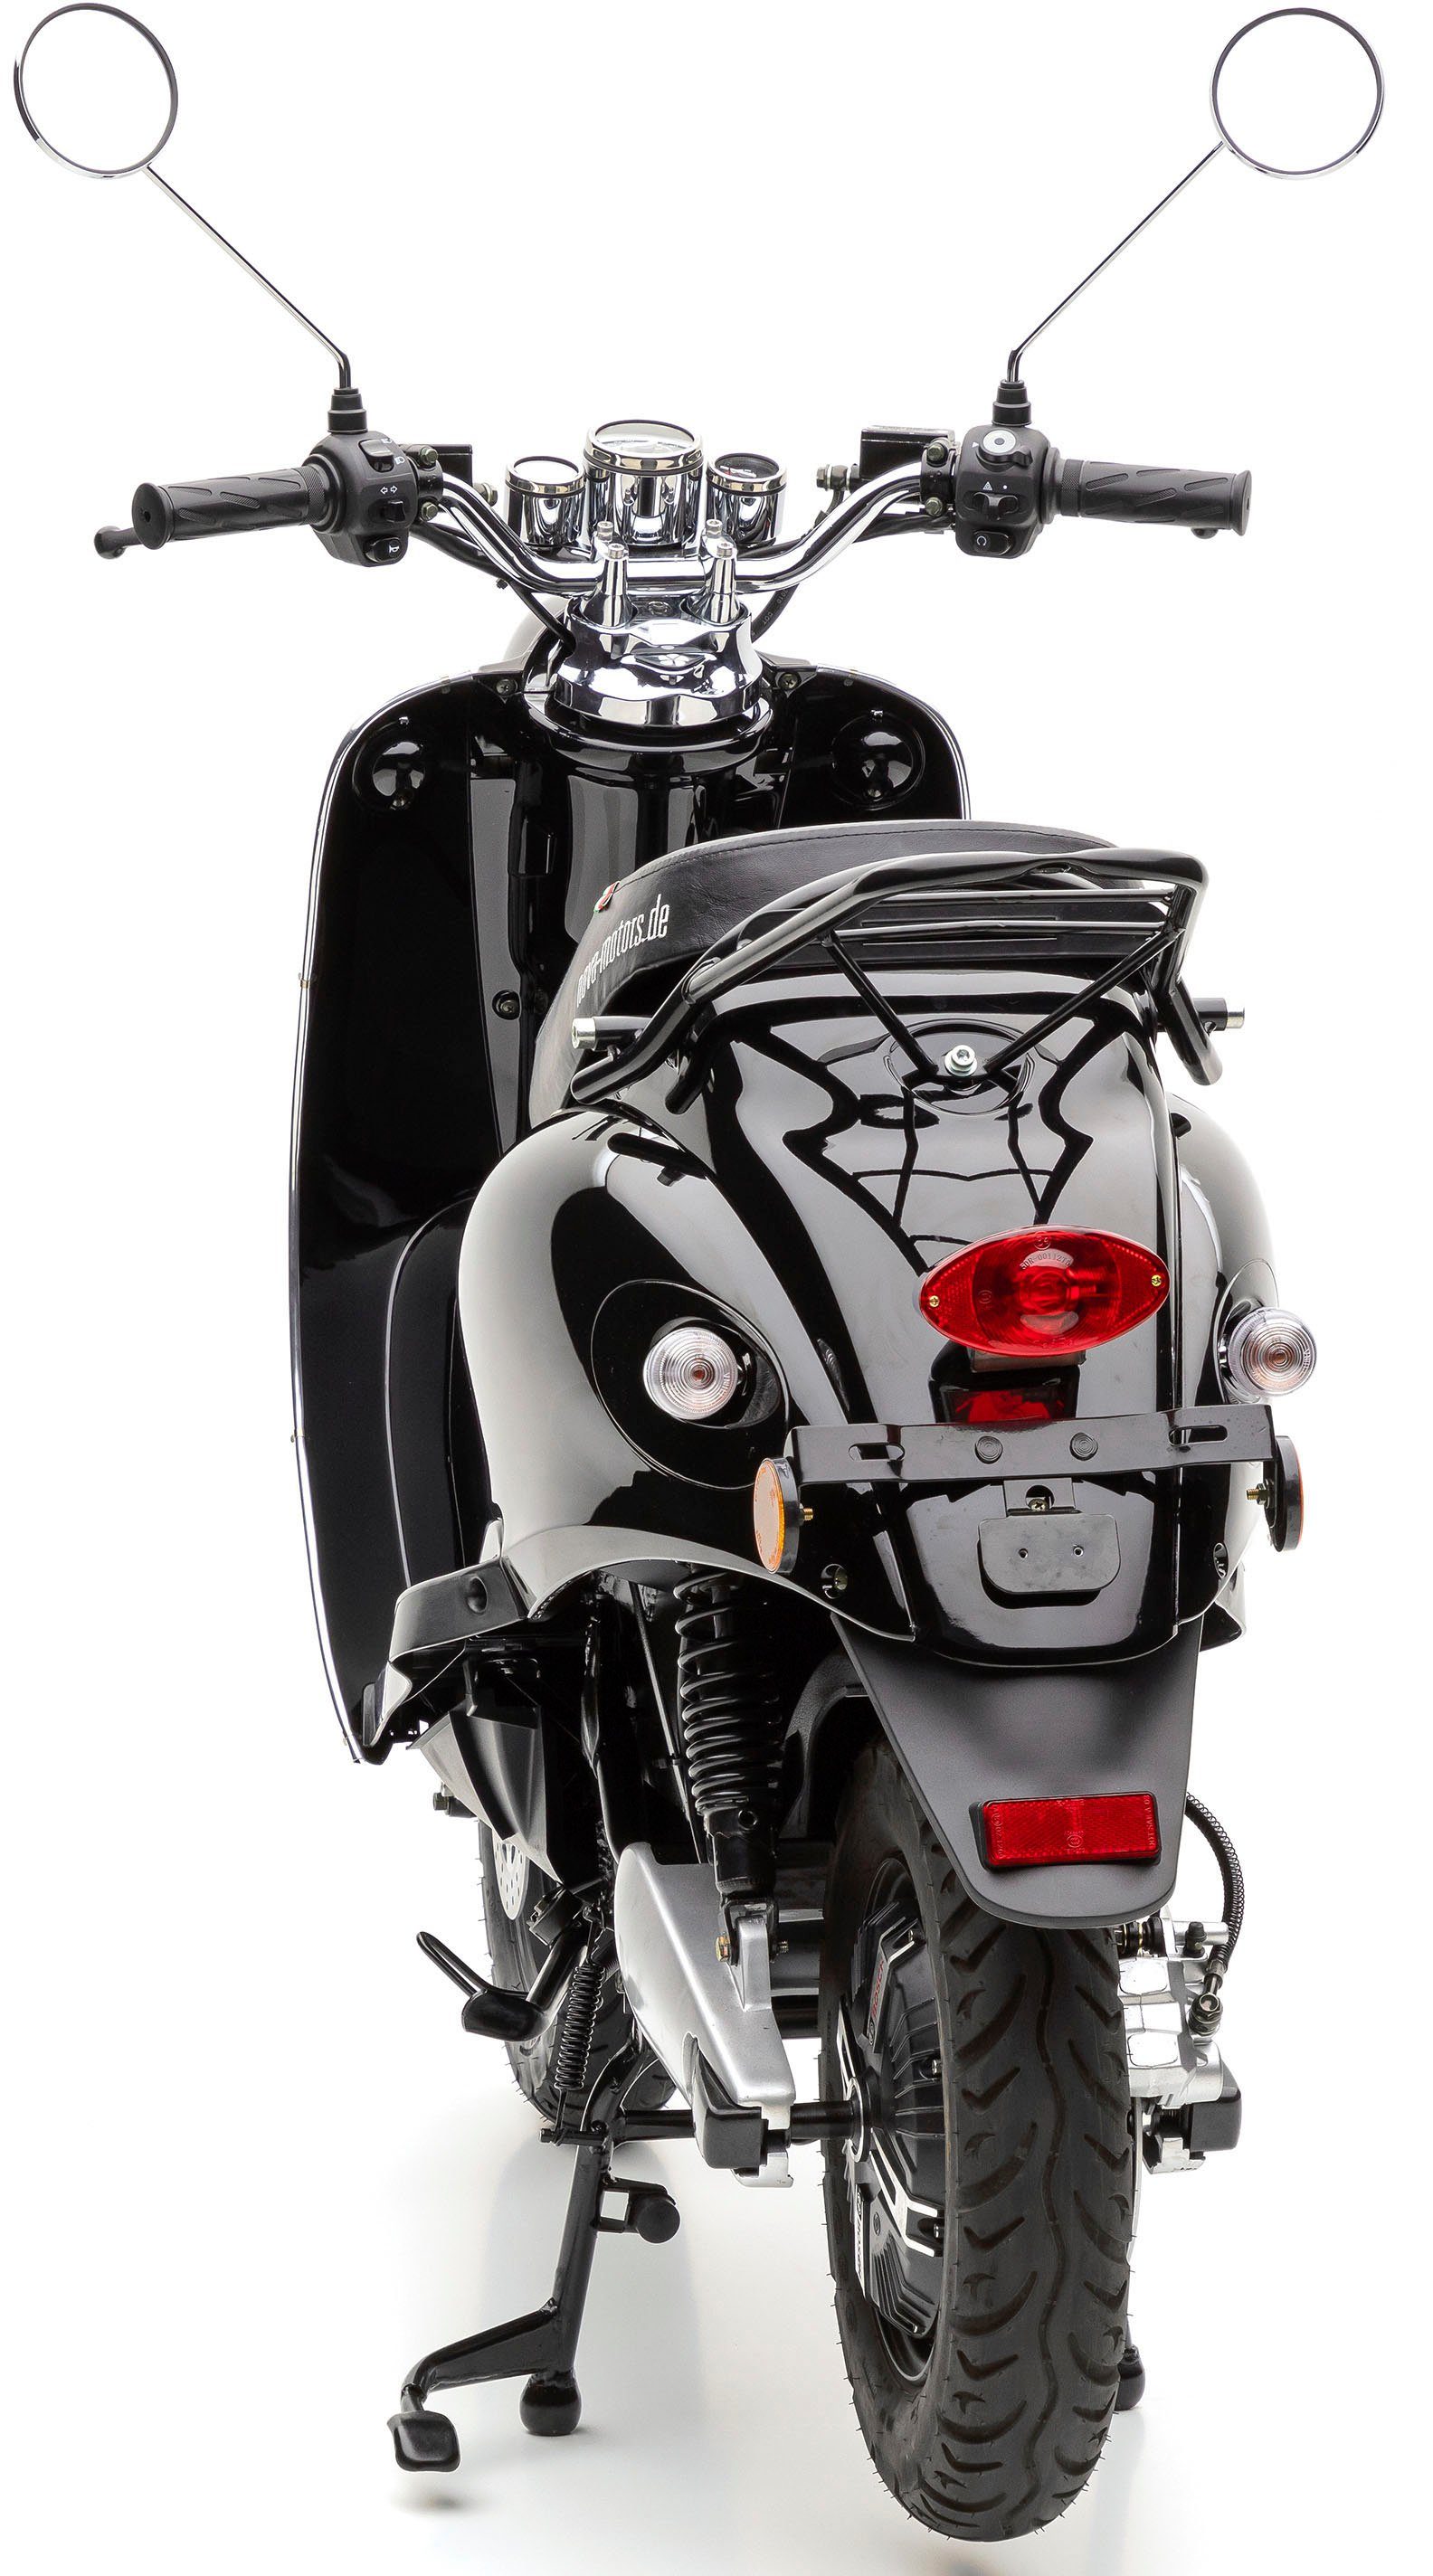 | 2000 eRetro härteverstellbare 45 W, km/h, Motors Nova hinten black uni Dual-Stoßdämpfer schwarz Li, E-Motorroller Star